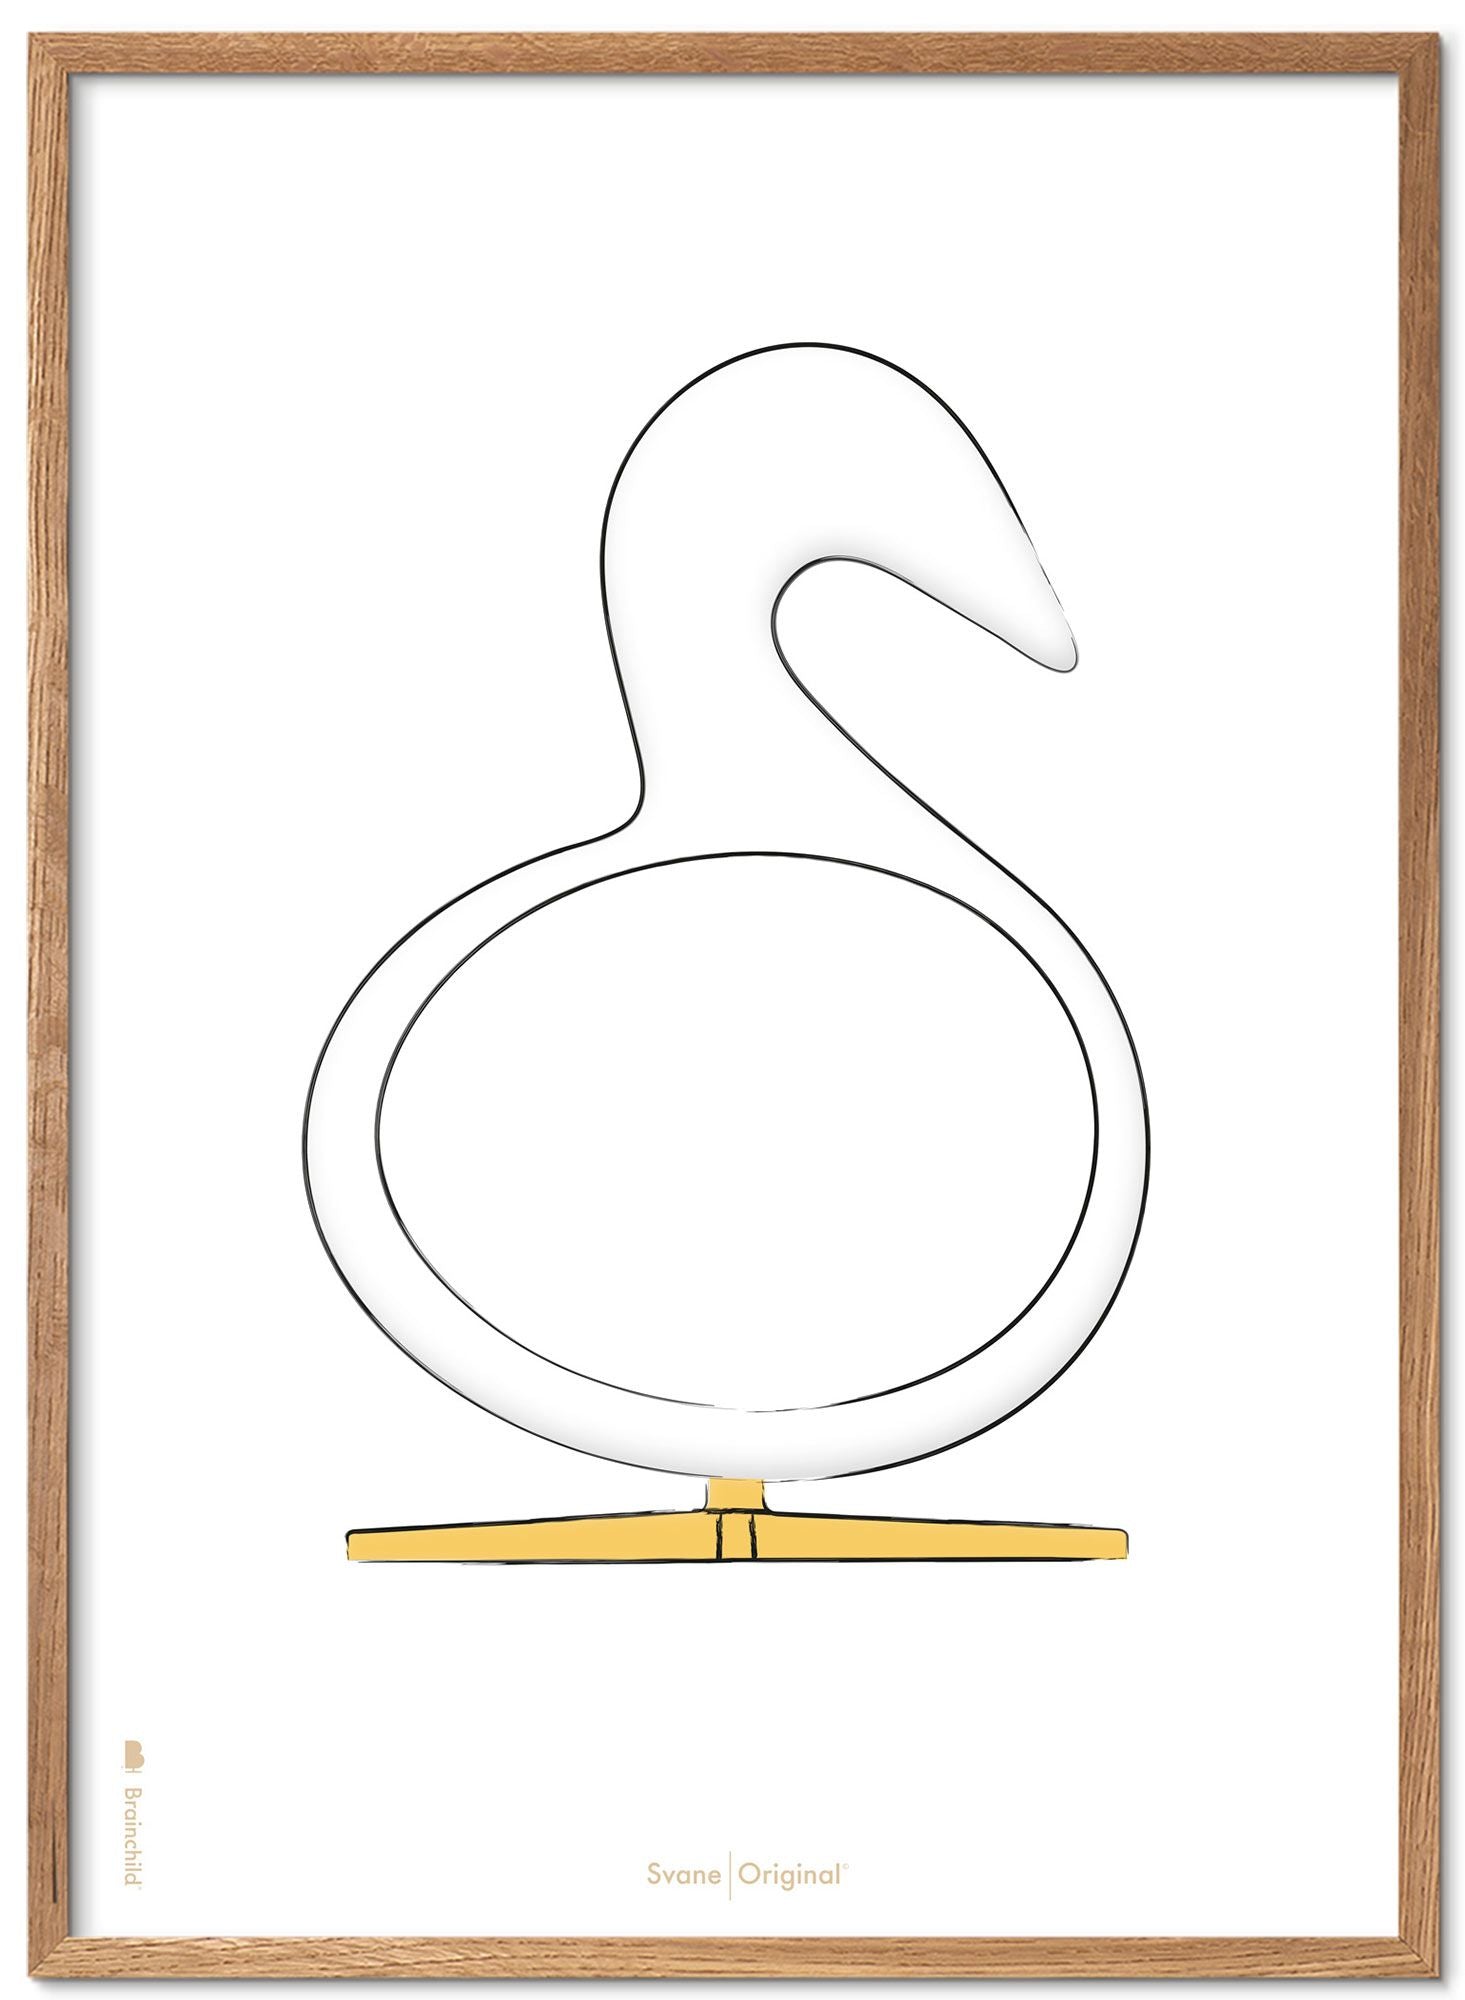 Brainchild Swan Design Sketch Poster Frame Made of Light Wood 50x70 cm, hvit bakgrunn